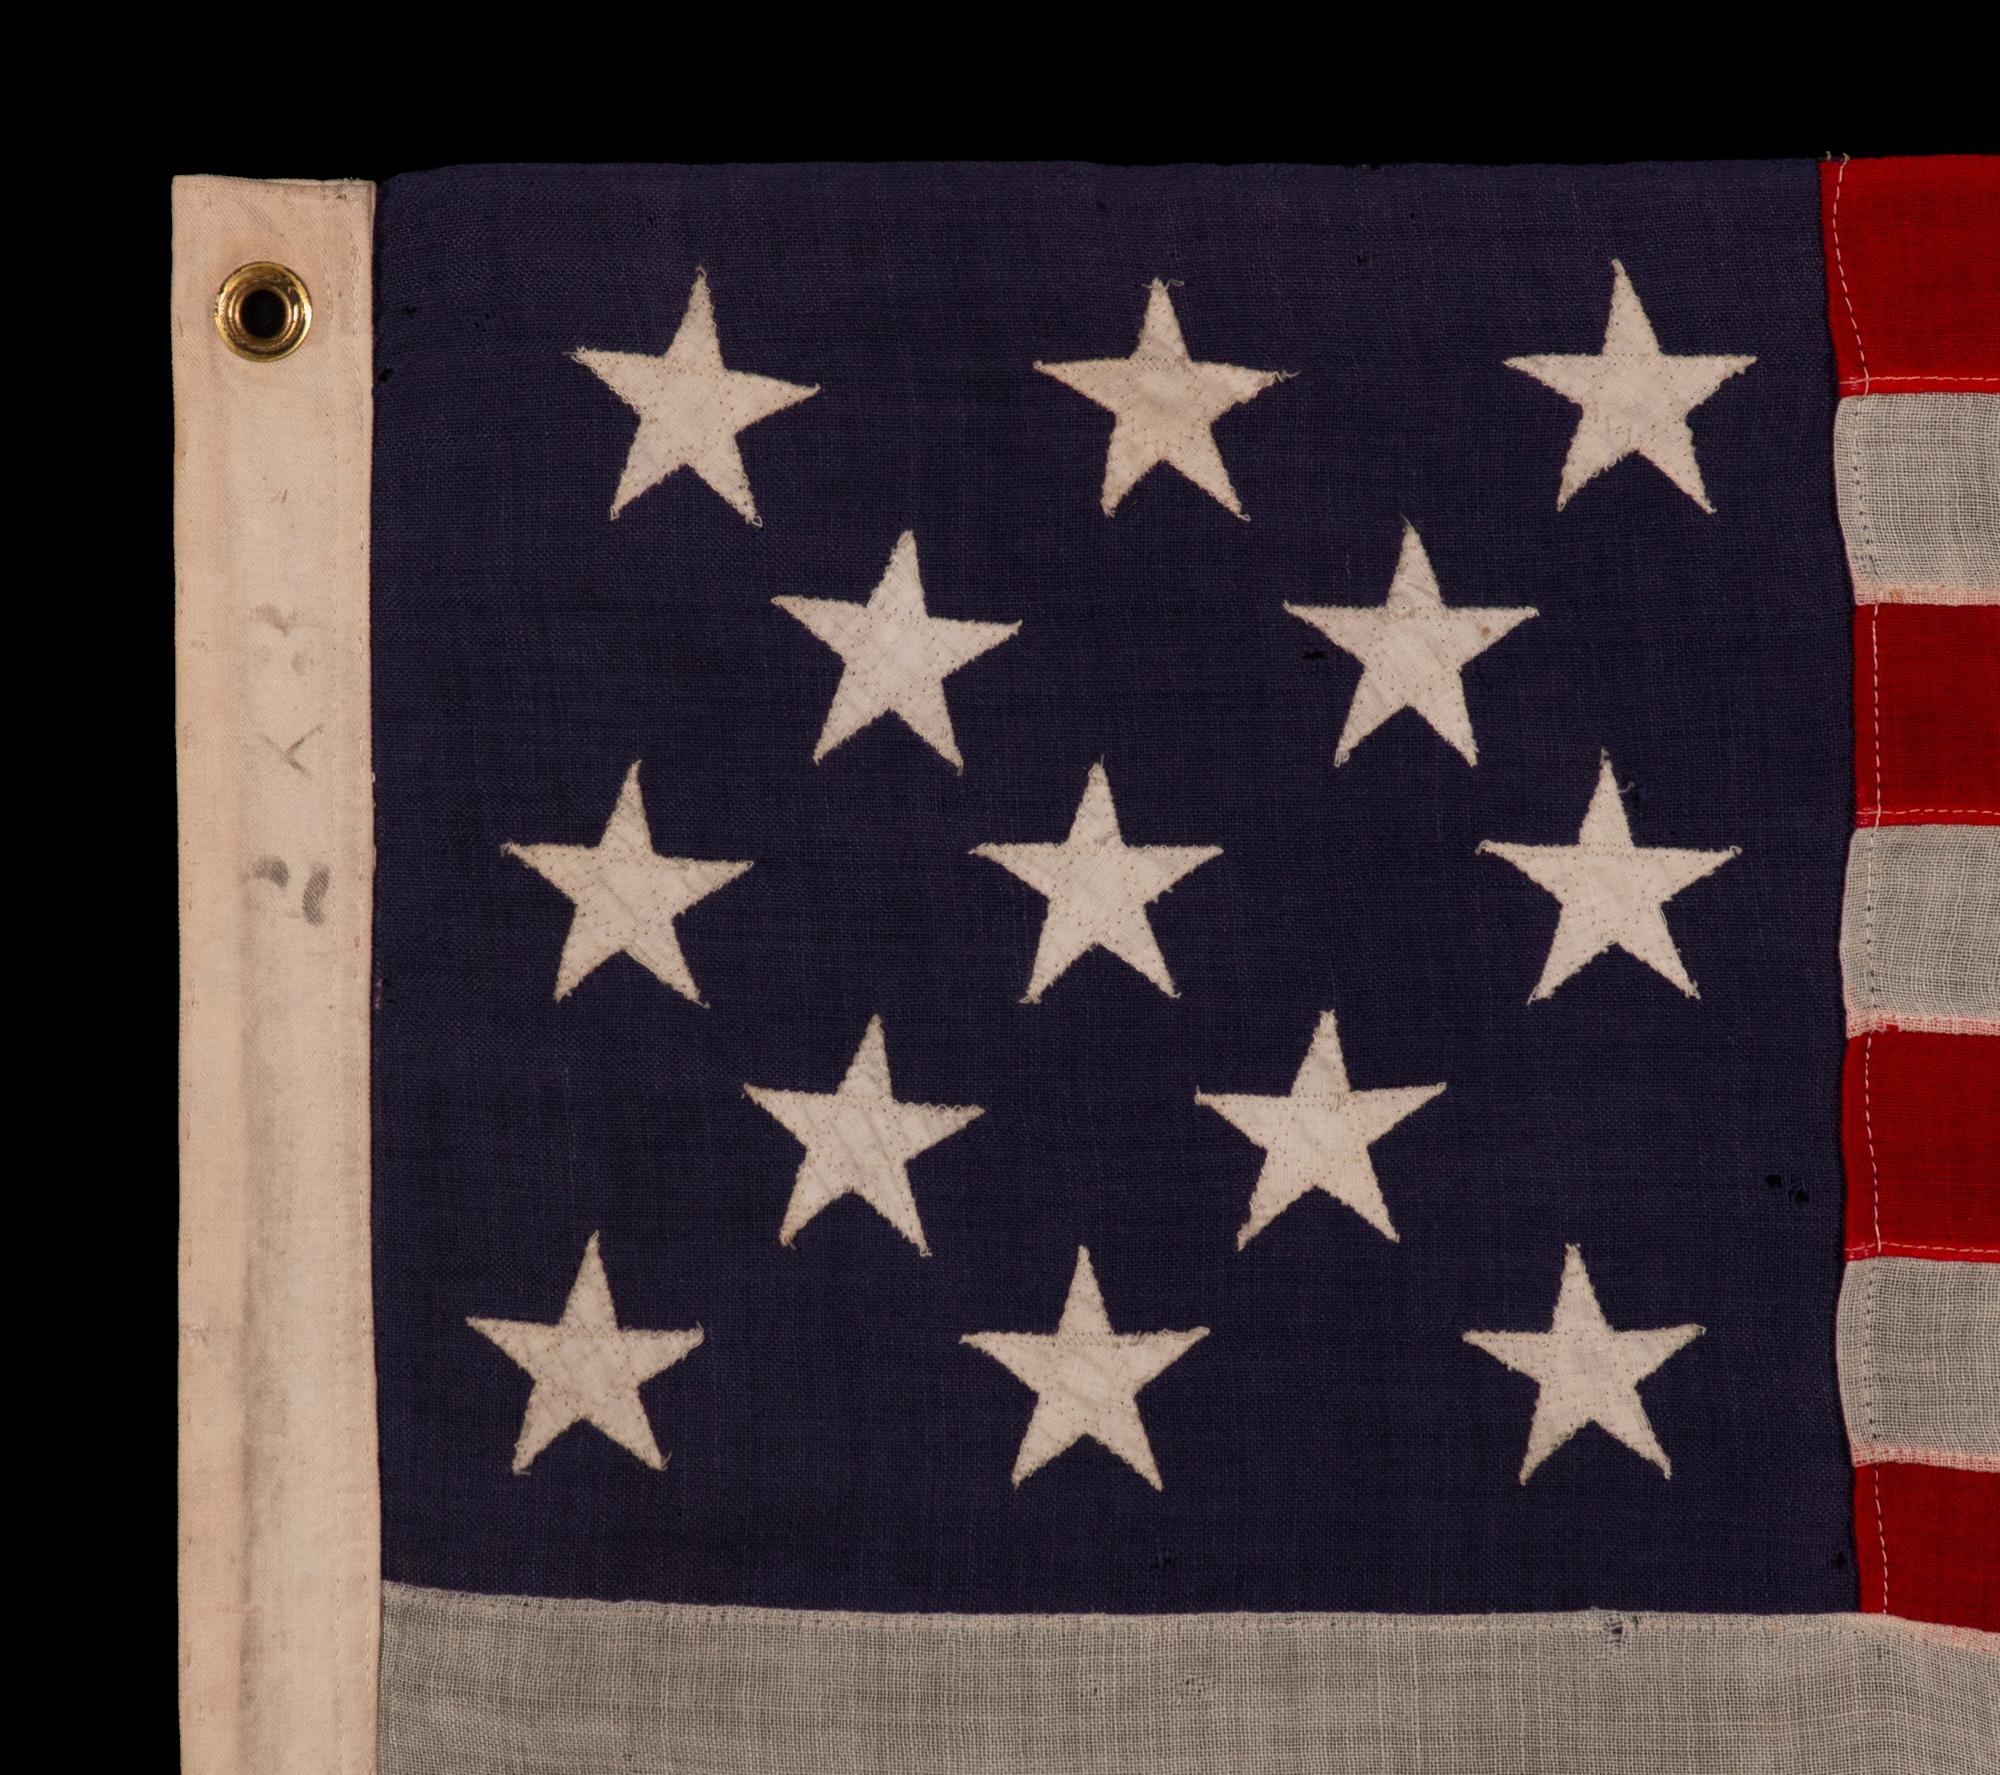 13 STERNE ANTIQUE AMERICAN FLAG MIT EINER 3-2-3-2-3-STERNENKONFIGURATION AUF EINEM INDIGO-KANON, QUADRATISCHEN PROPORTIONEN UND EINER SCHÖNEN GESAMTDARSTELLUNG, HERGESTELLT ca. 1895-1926

Diese antike amerikanische Flagge mit 13 Sternen gehört zu